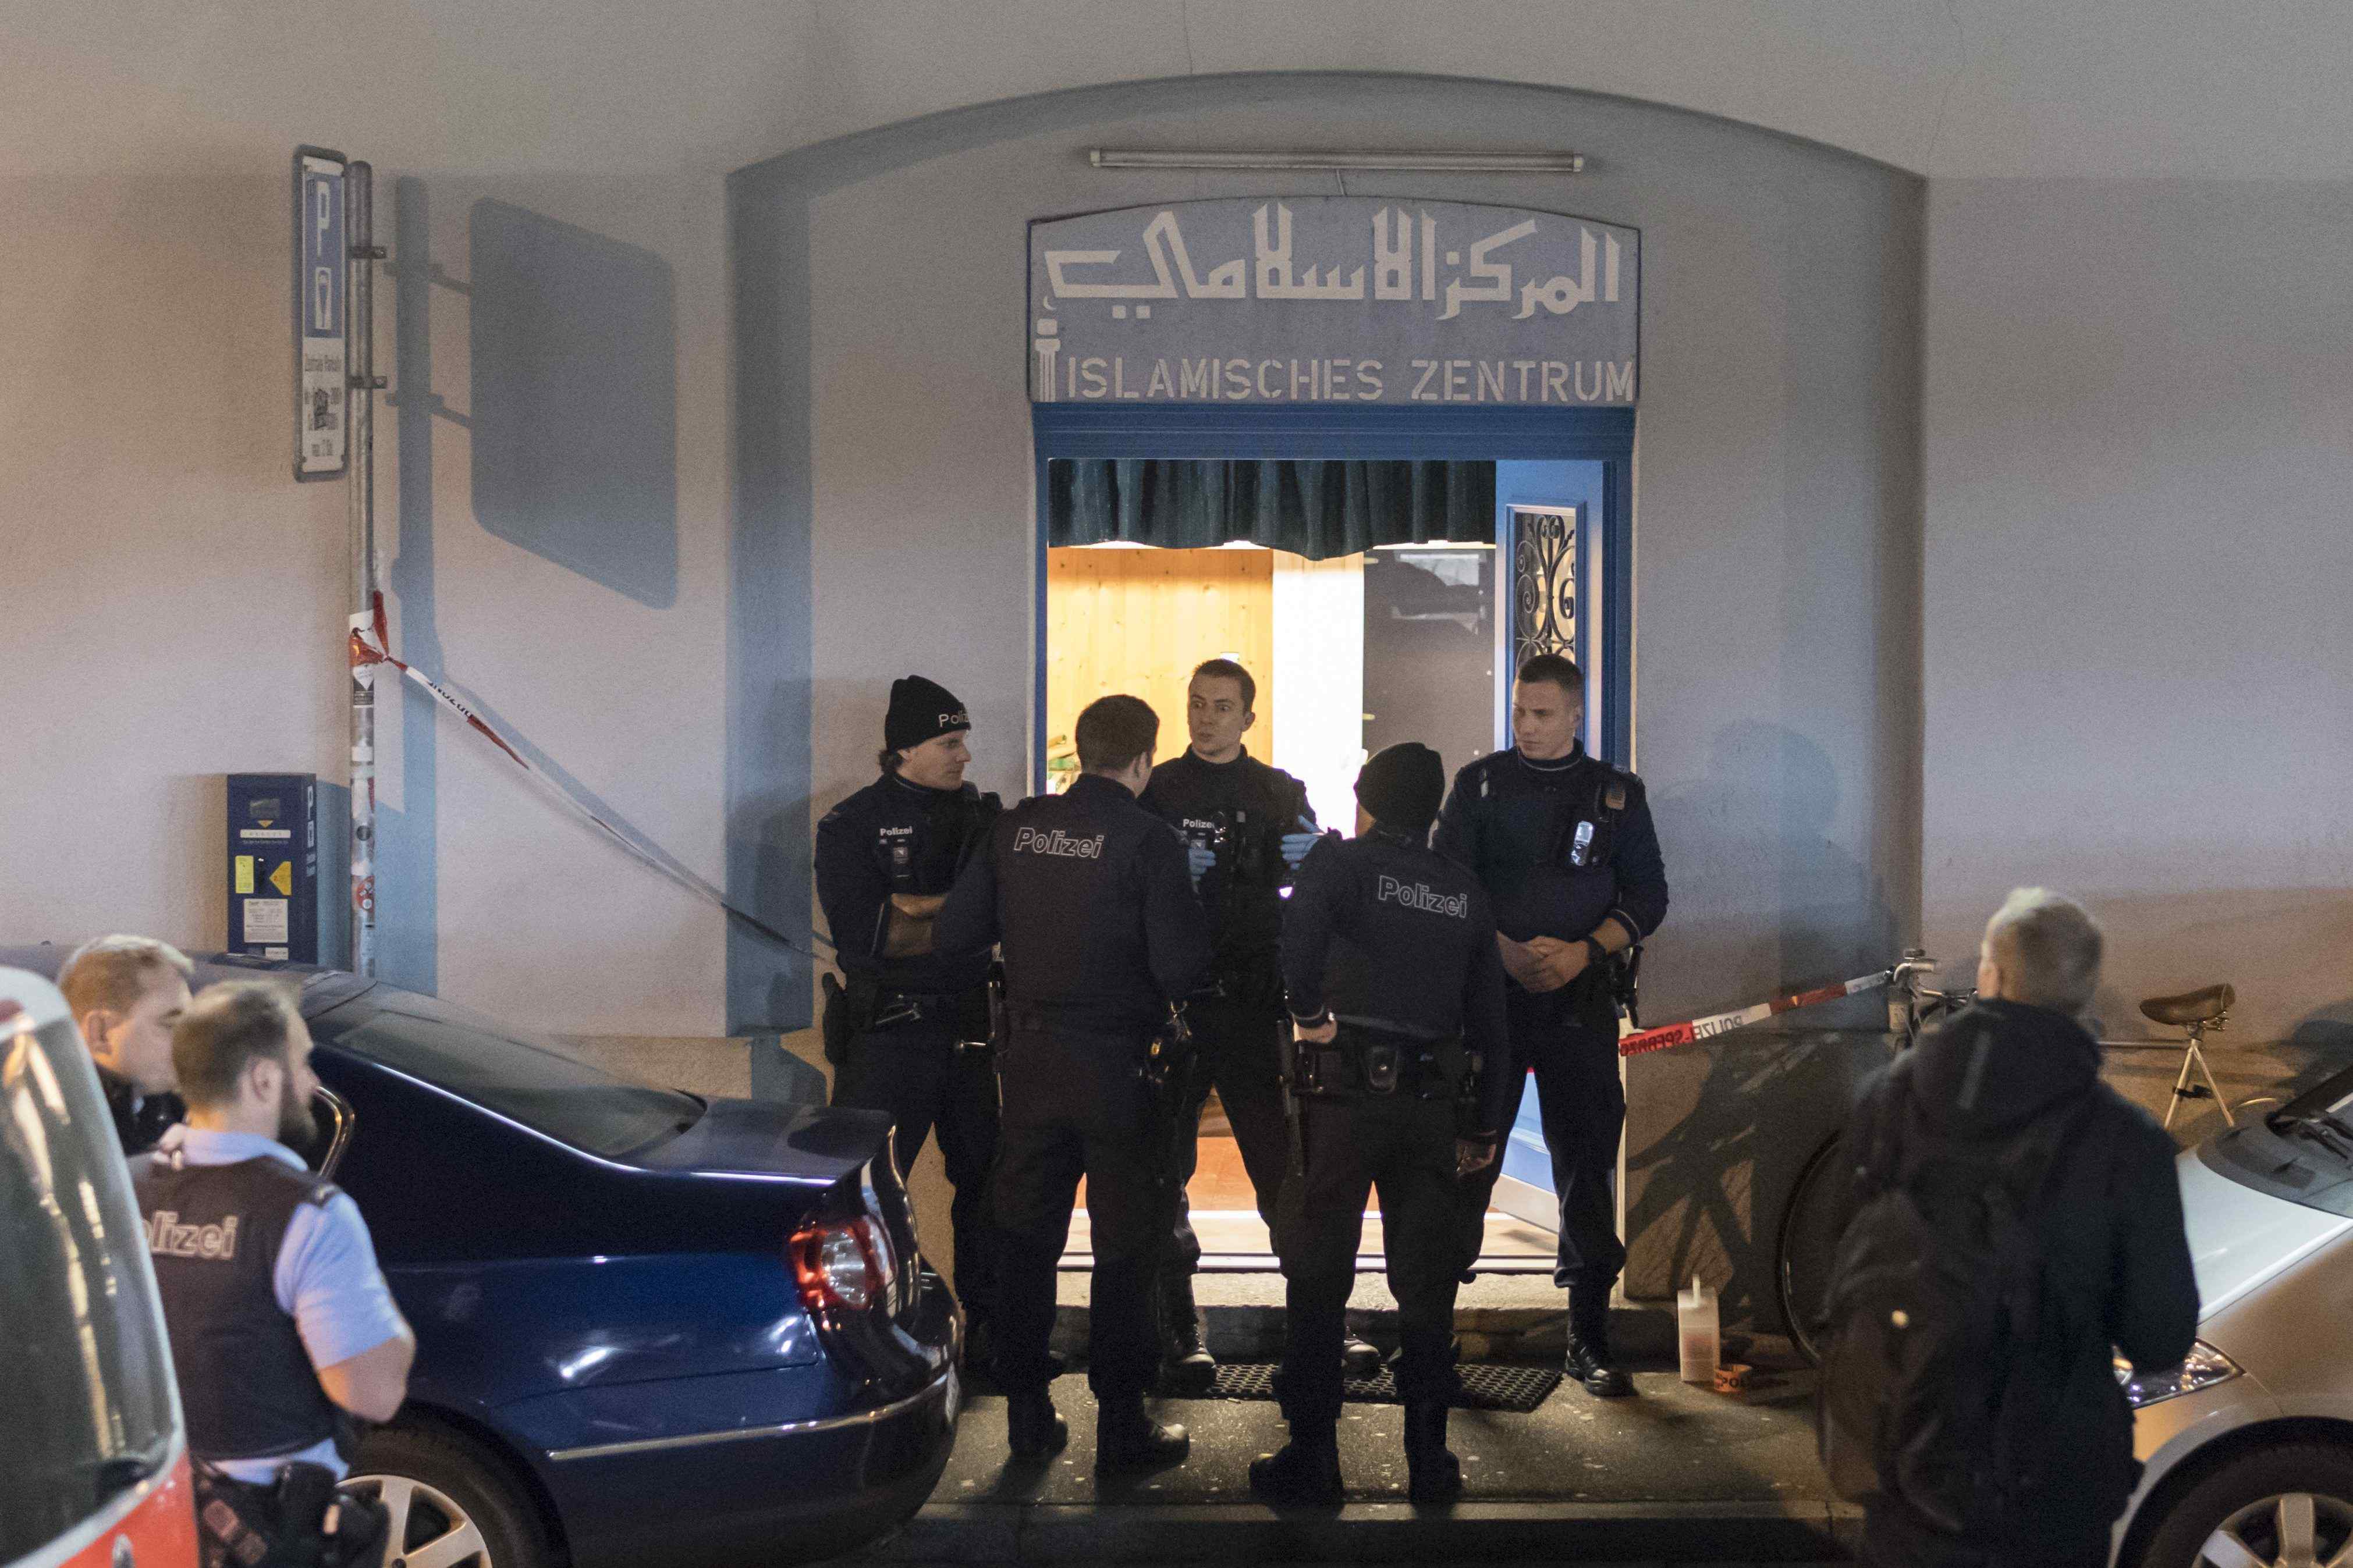 Tres ferits per trets en un centre d'oració islàmic a Zuric